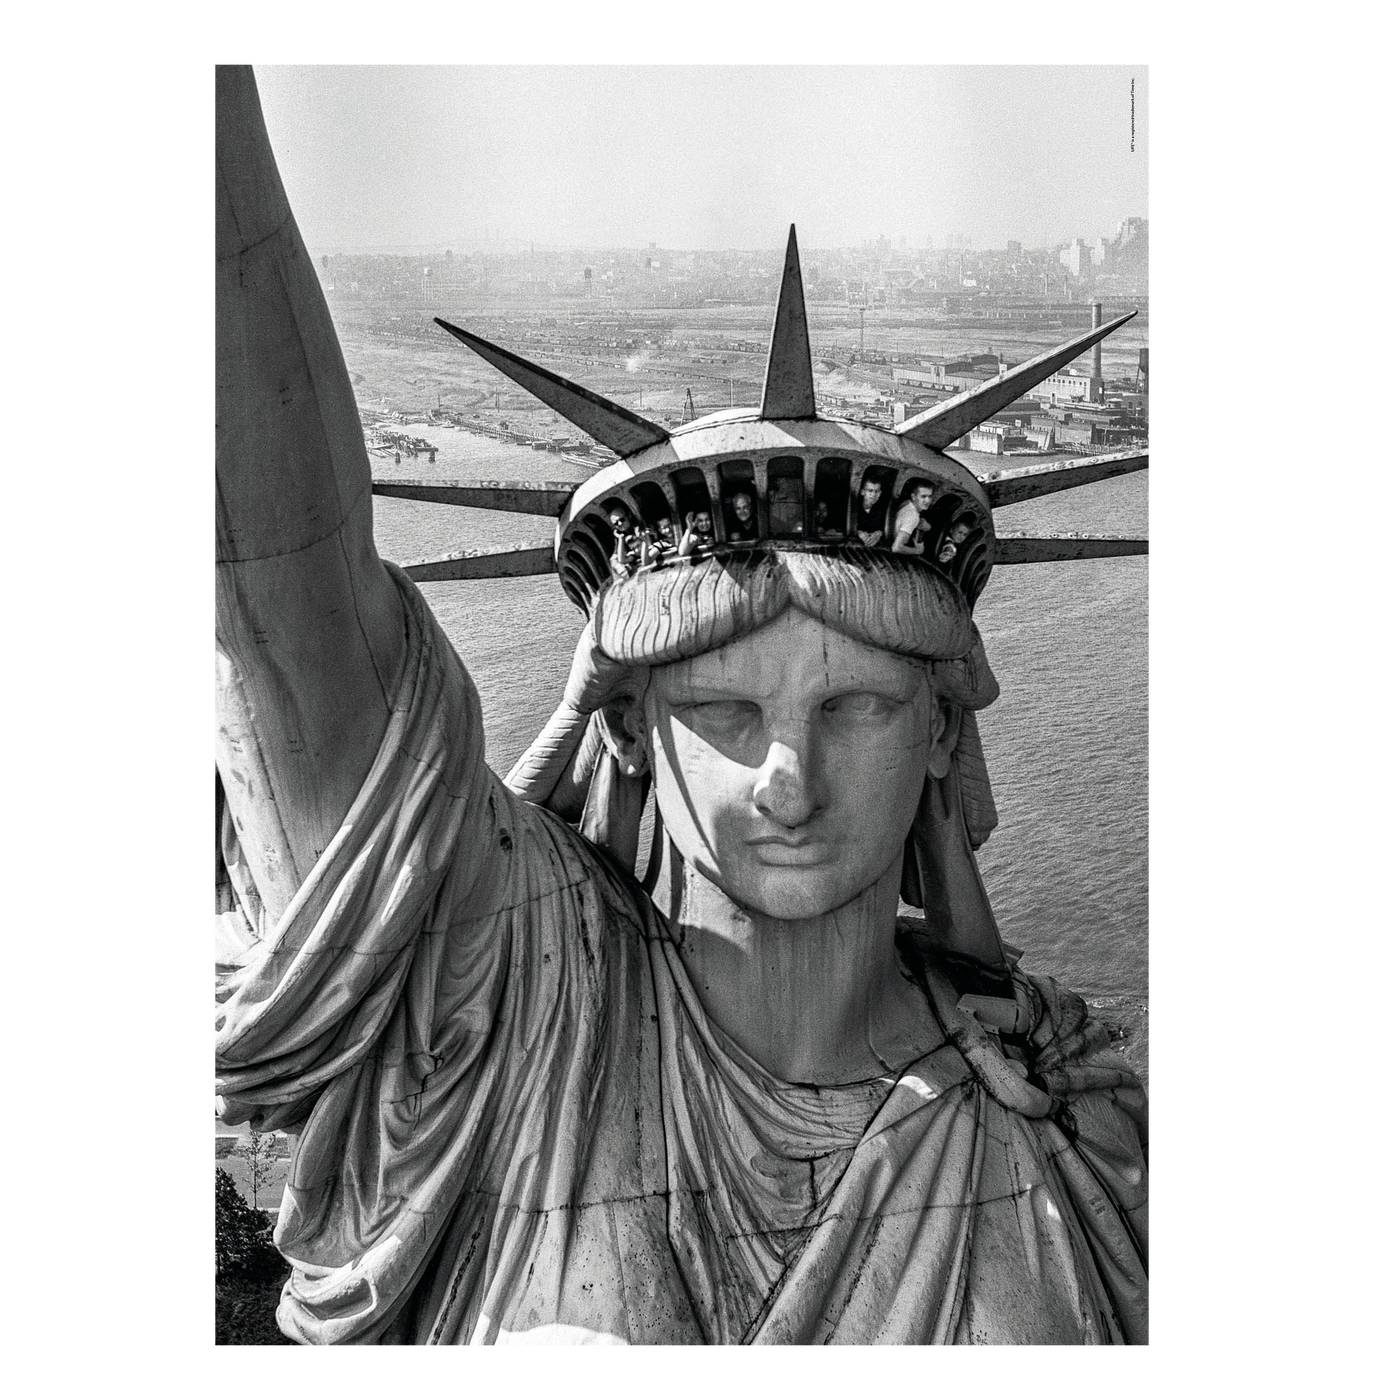 Life Magazine: Statue of Liberty - 1000 brikker